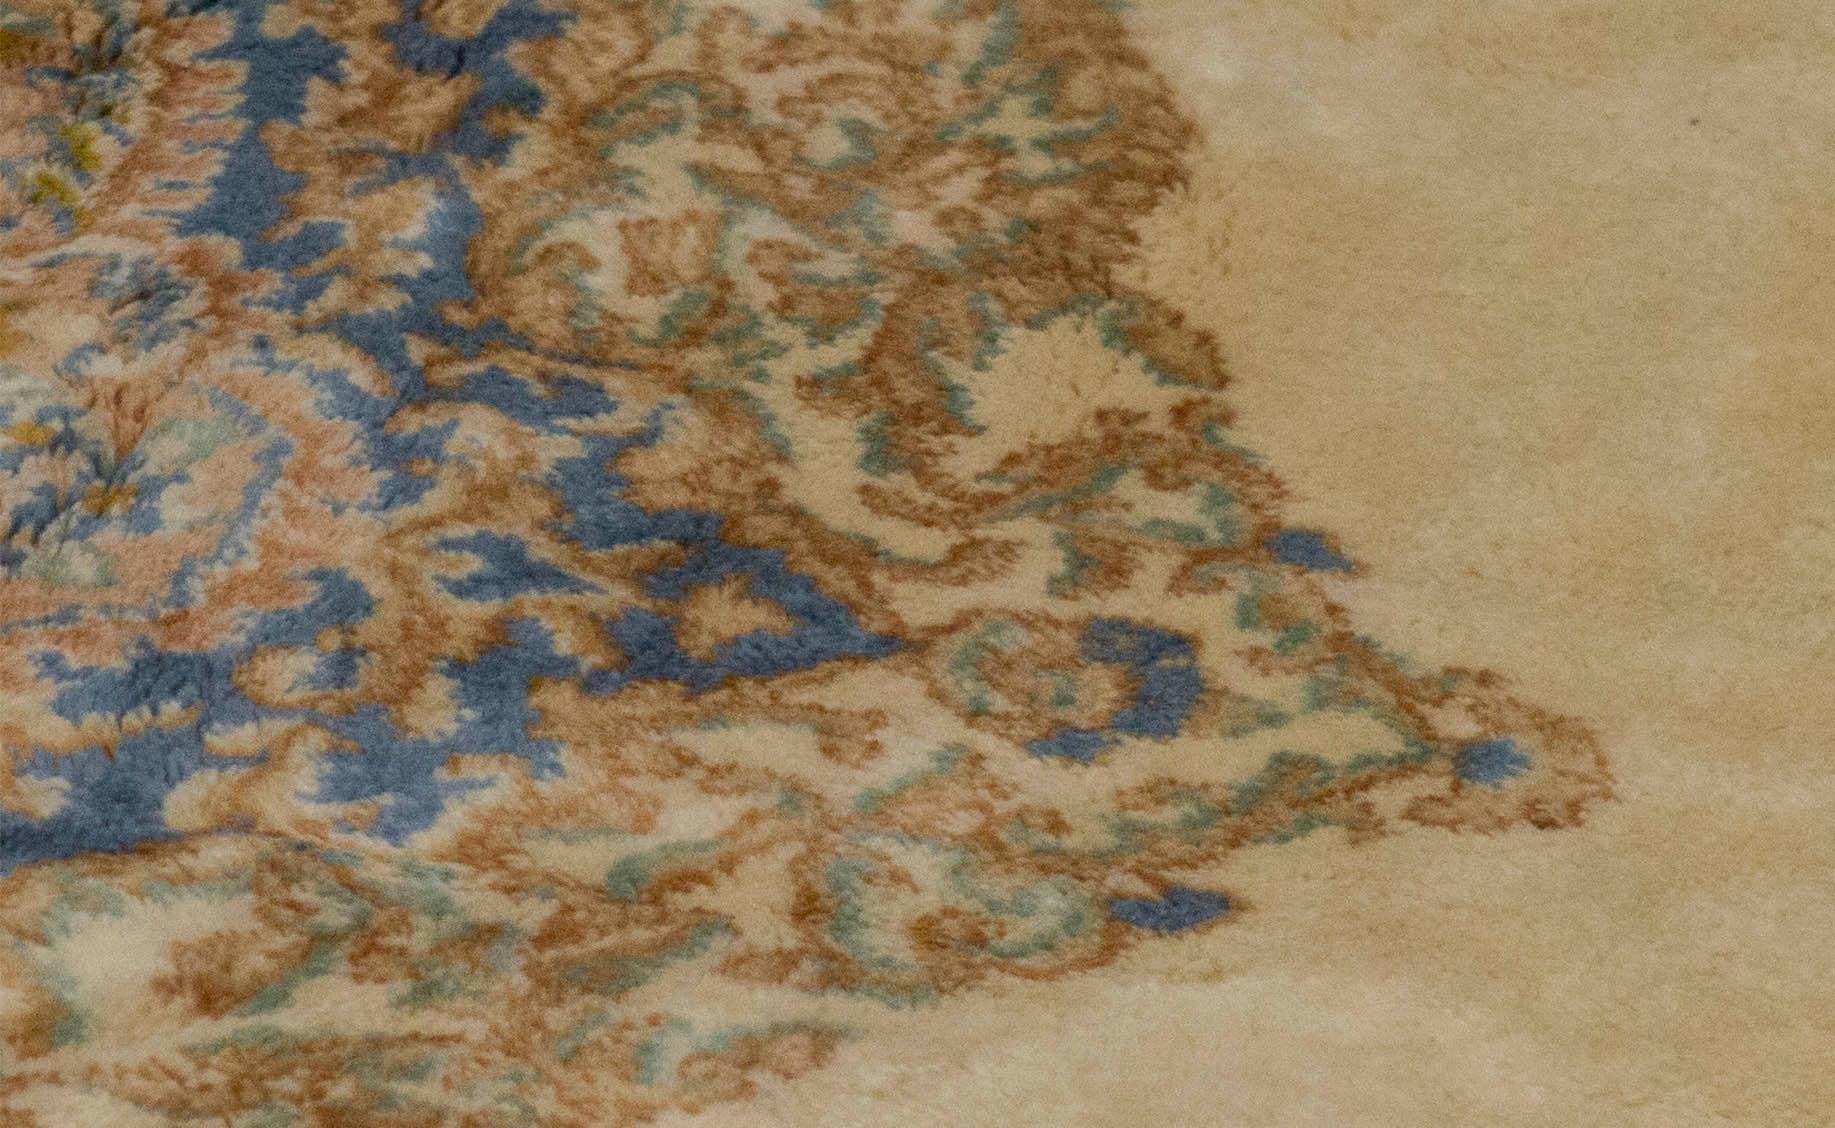 Ein reizvoller Kerman-Teppich, der mit exquisiten Details gewebt wurde. Der rote Grund ist mit gewebten Blumenmustern gefüllt, die ein zentrales elfenbeinfarbenes und zartblaues Medaillon umgeben, das von einer zartgrünen Hauptbordüre und